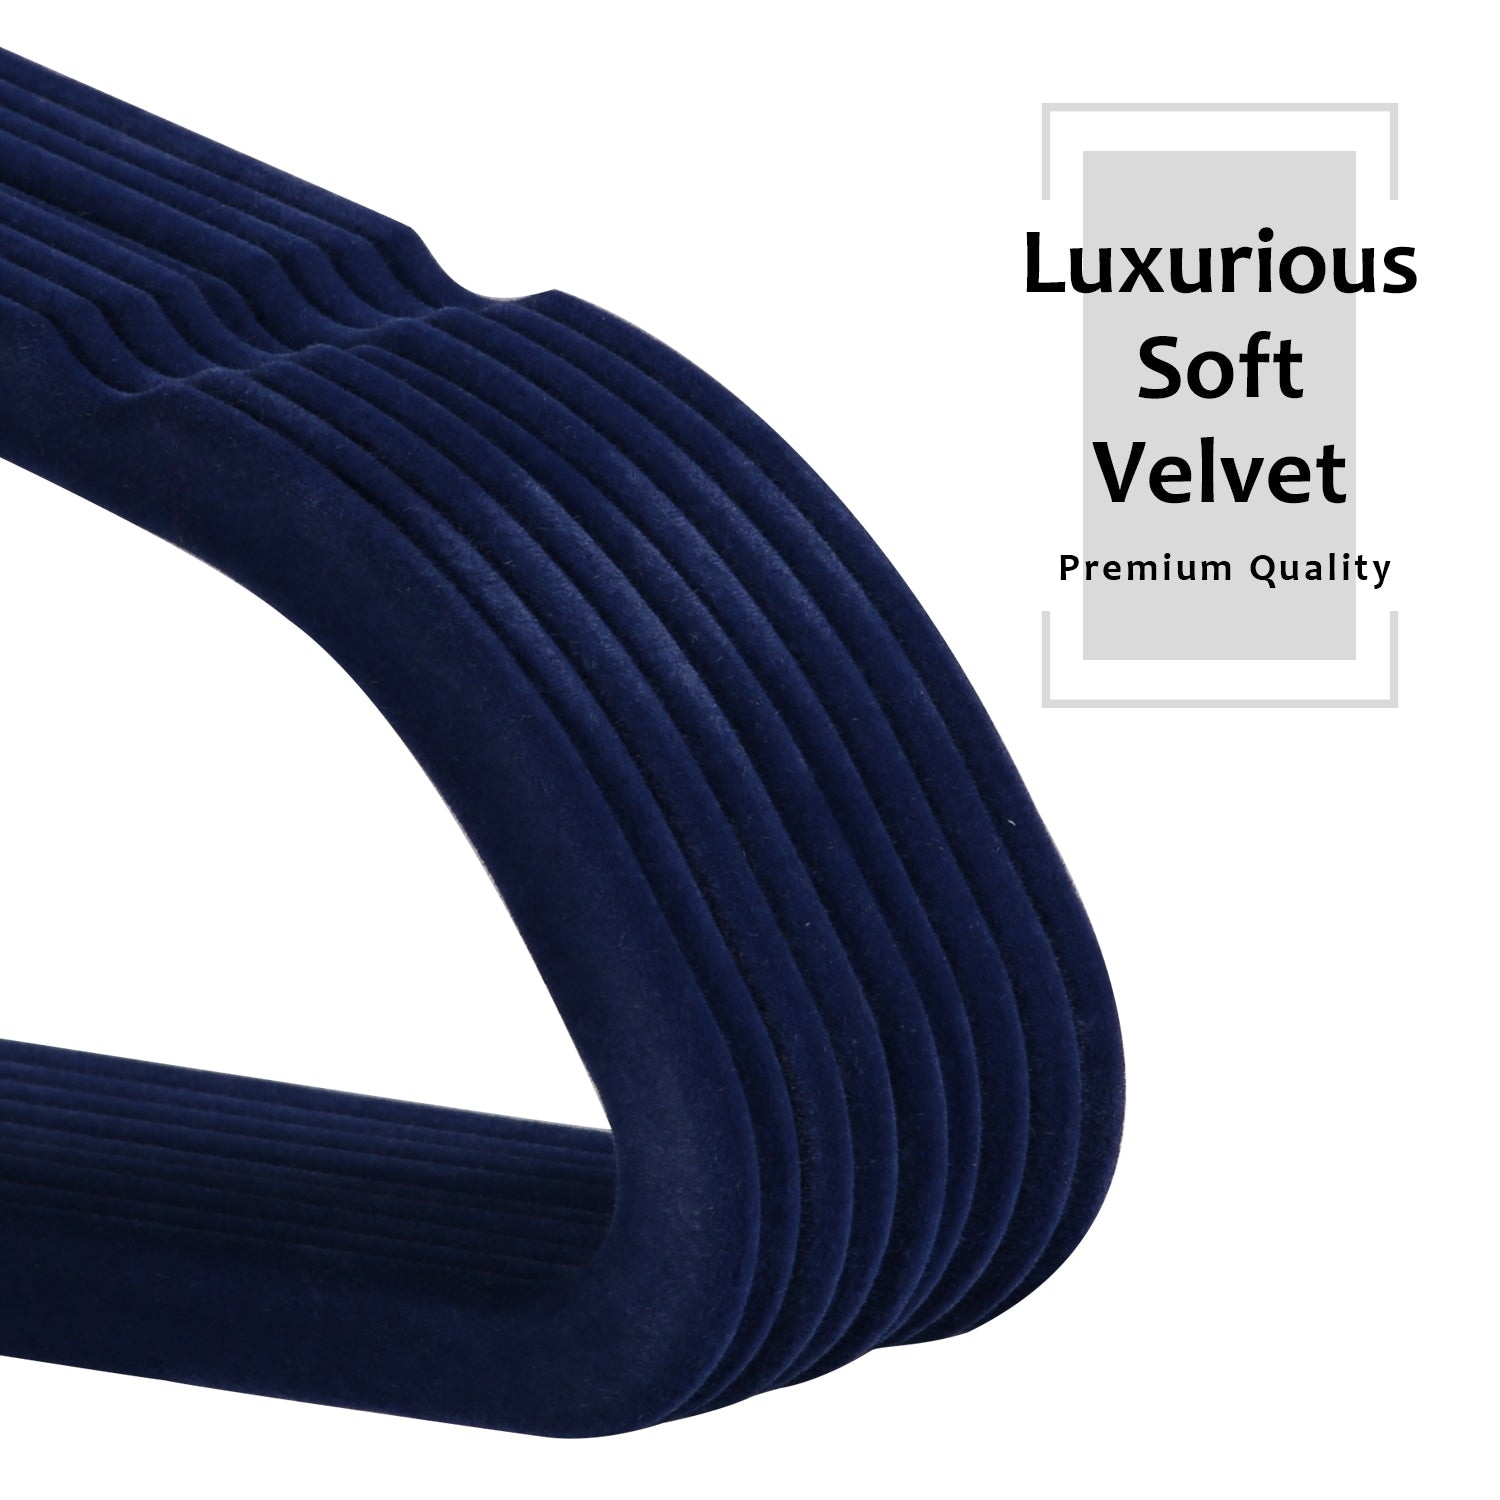 Real Living Black Velvet Hangers, 50-Pack